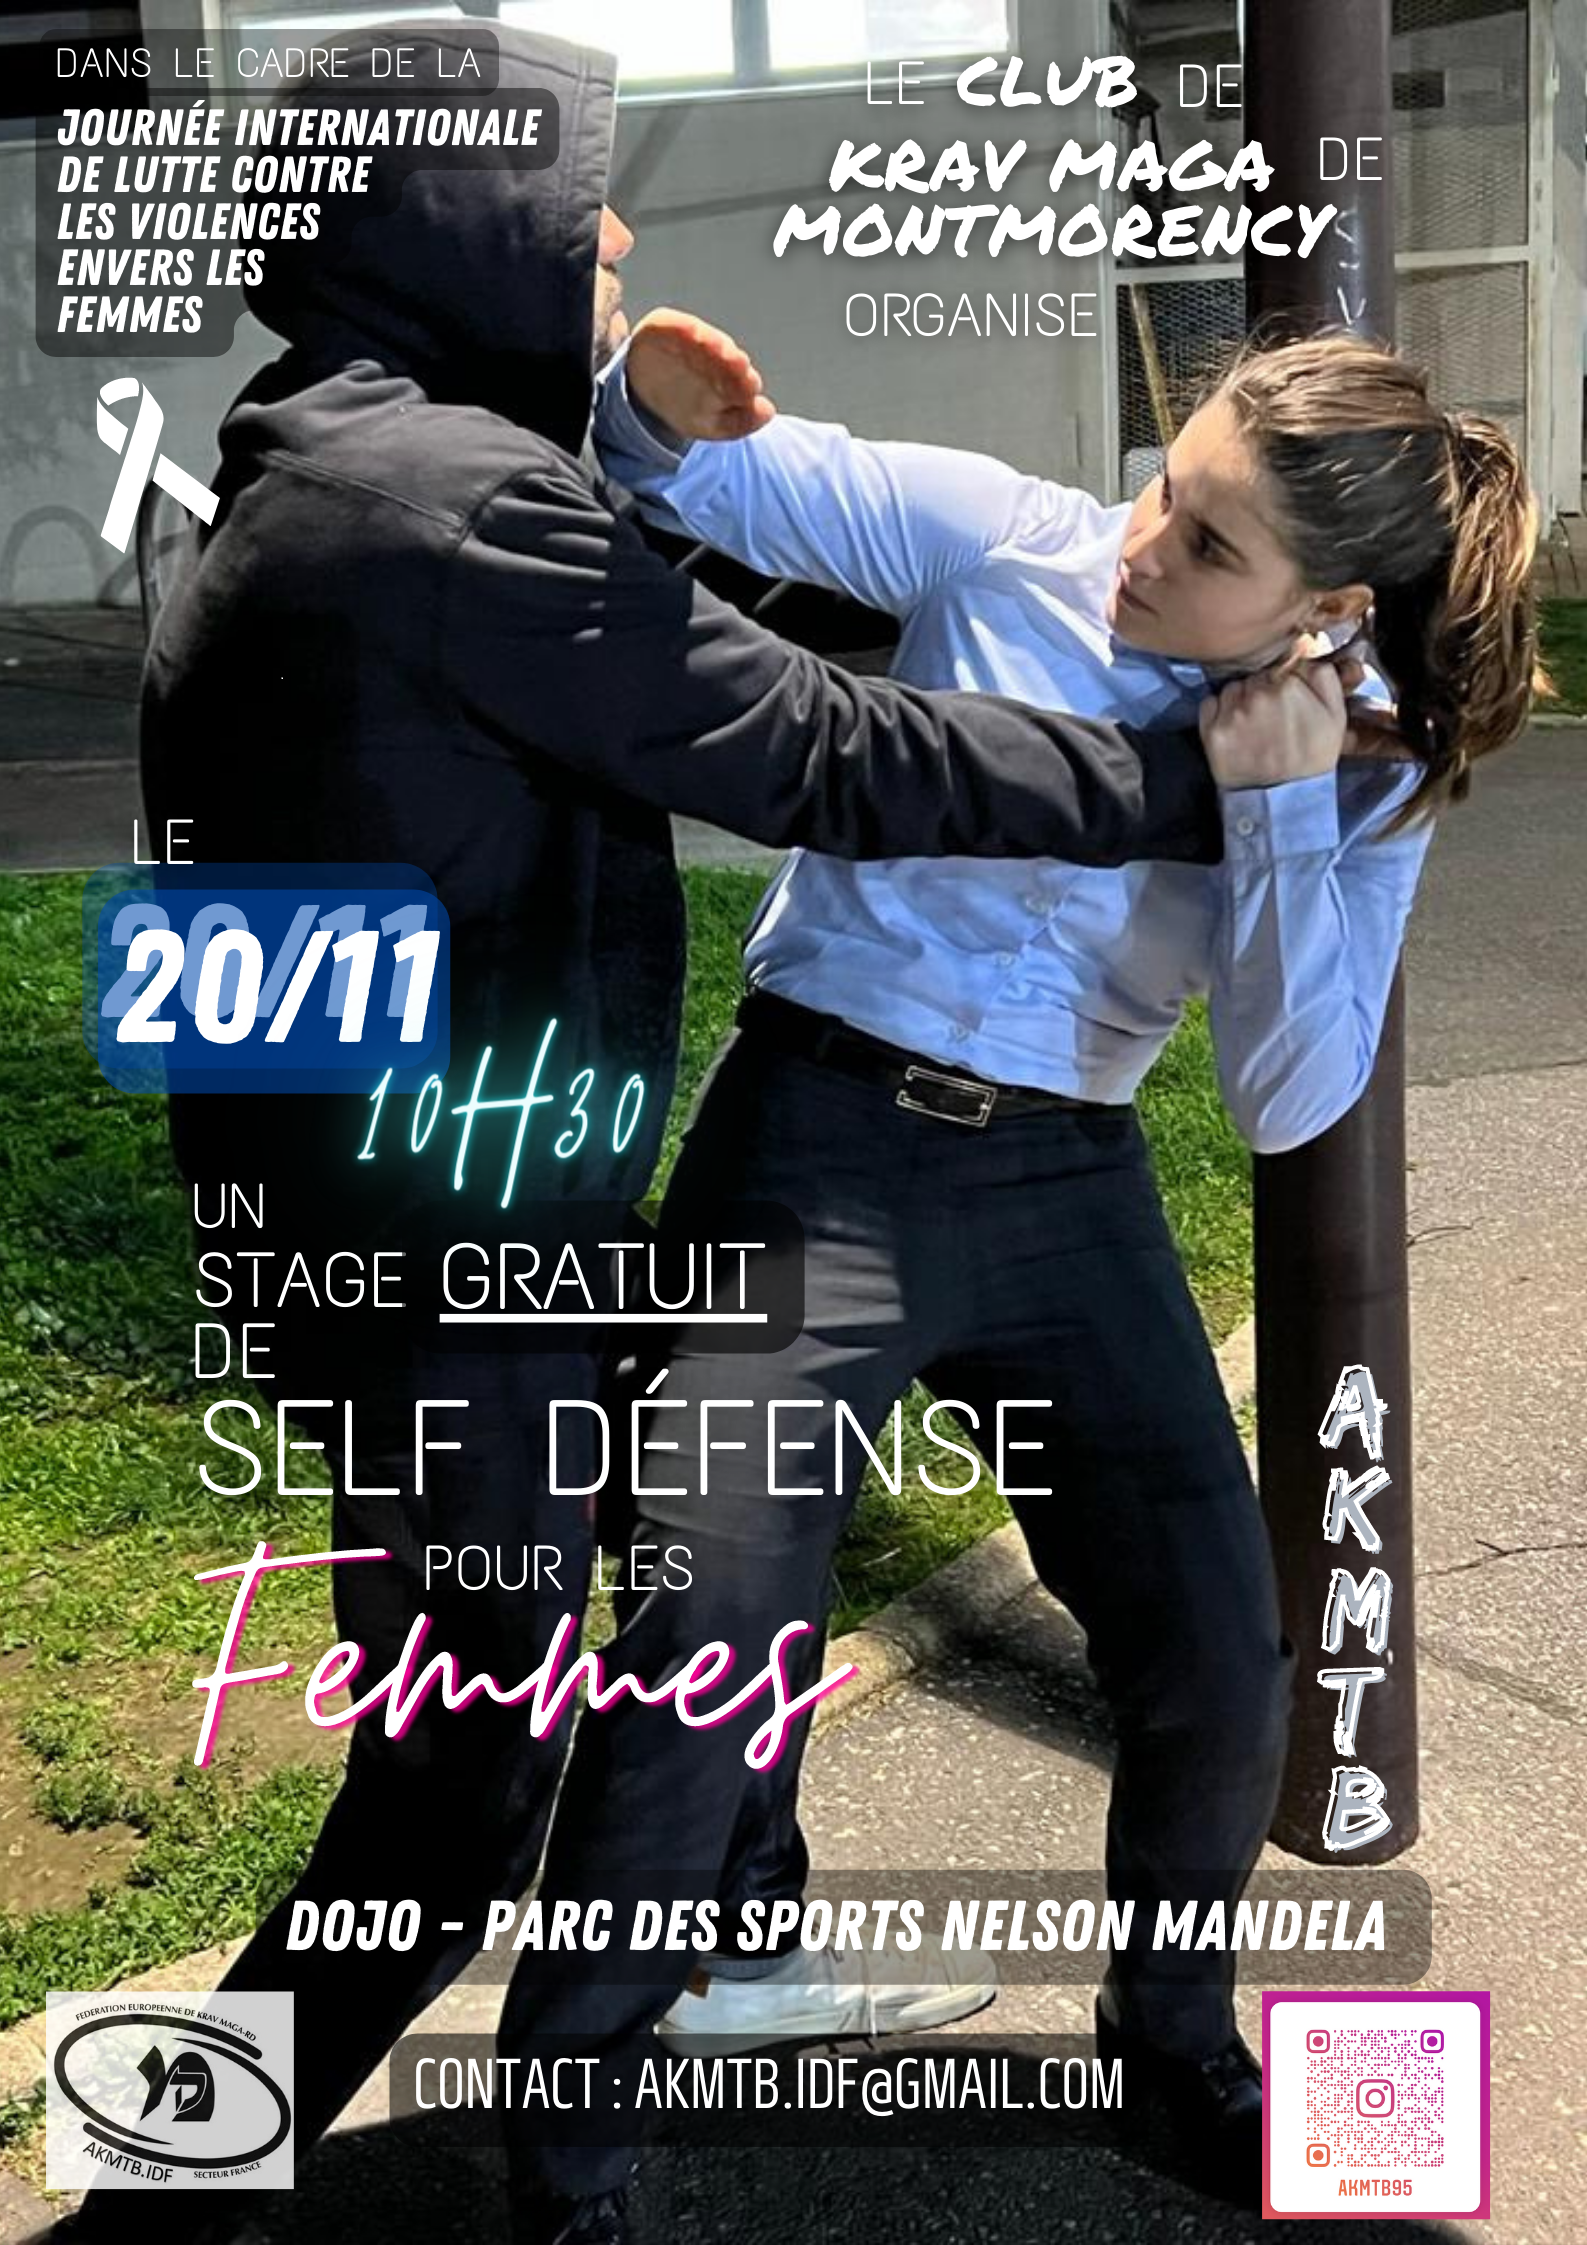 Le self-défense enseigné aux ados et aux femmes